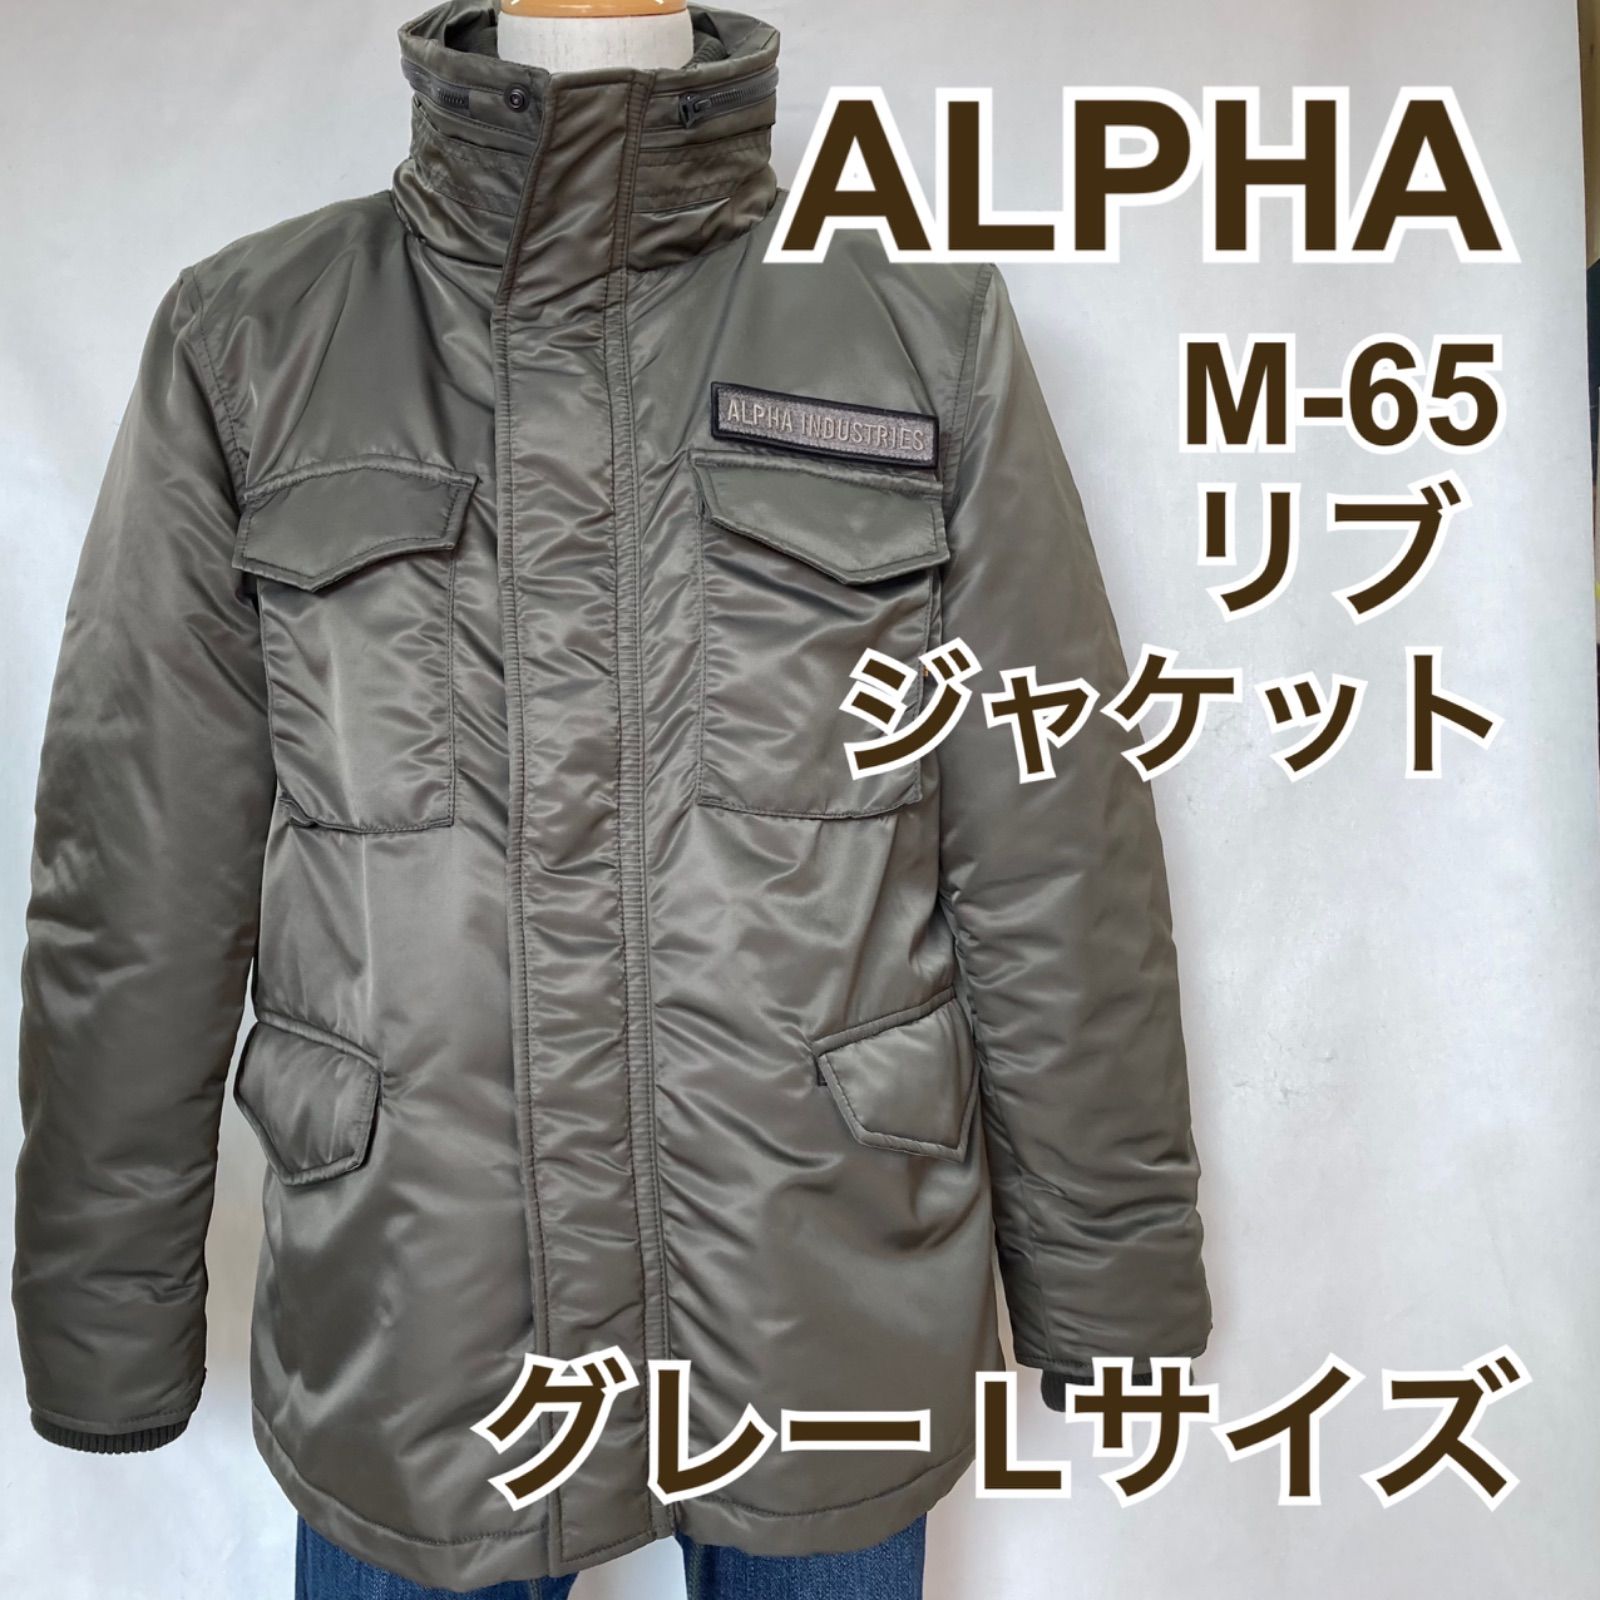 【美品】アルファインダストリーズ M-65 リブジャケット